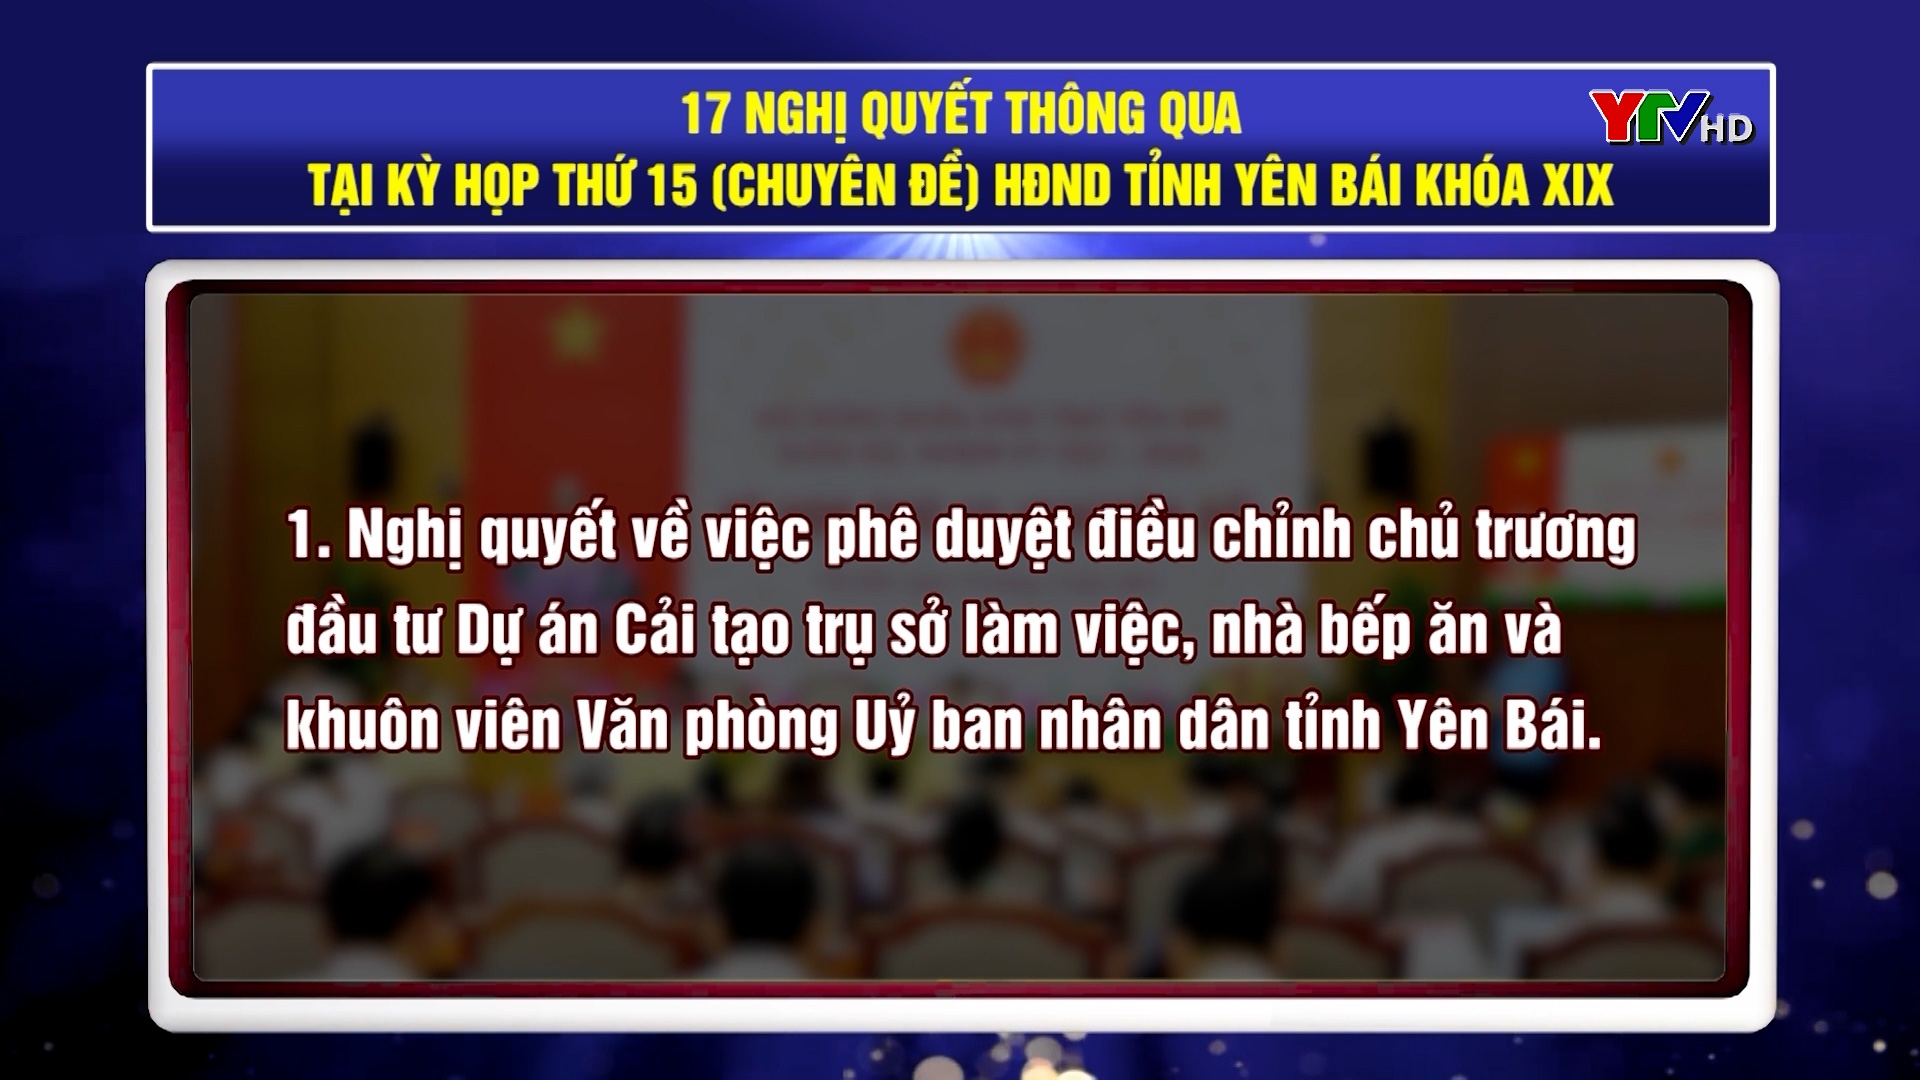 Kỳ họp thứ 15 (chuyên đề) HĐND tỉnh Yên Bái khoá XIX thông qua 17 Nghị quyết